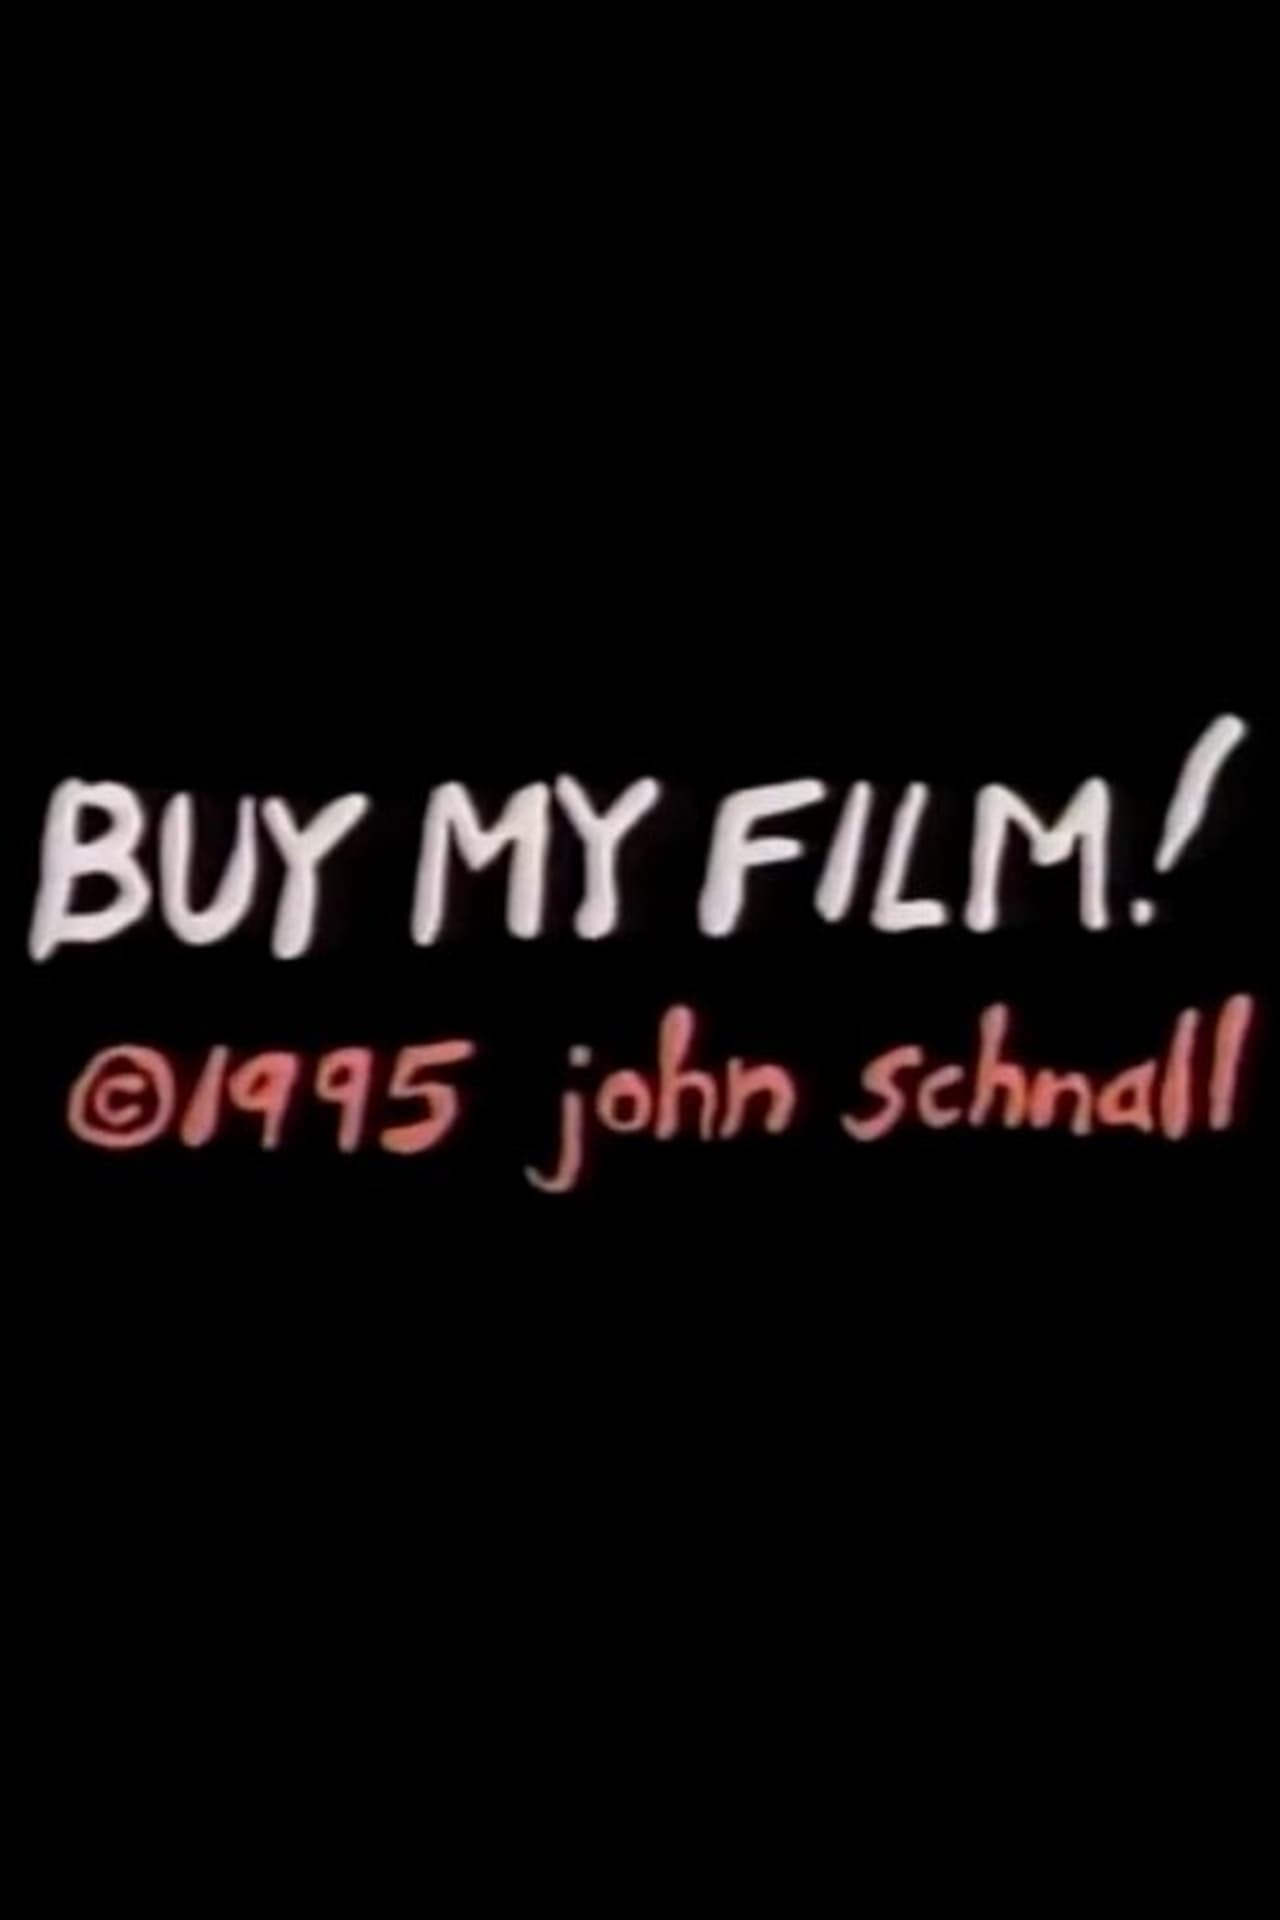 Buy My Film! (1995)